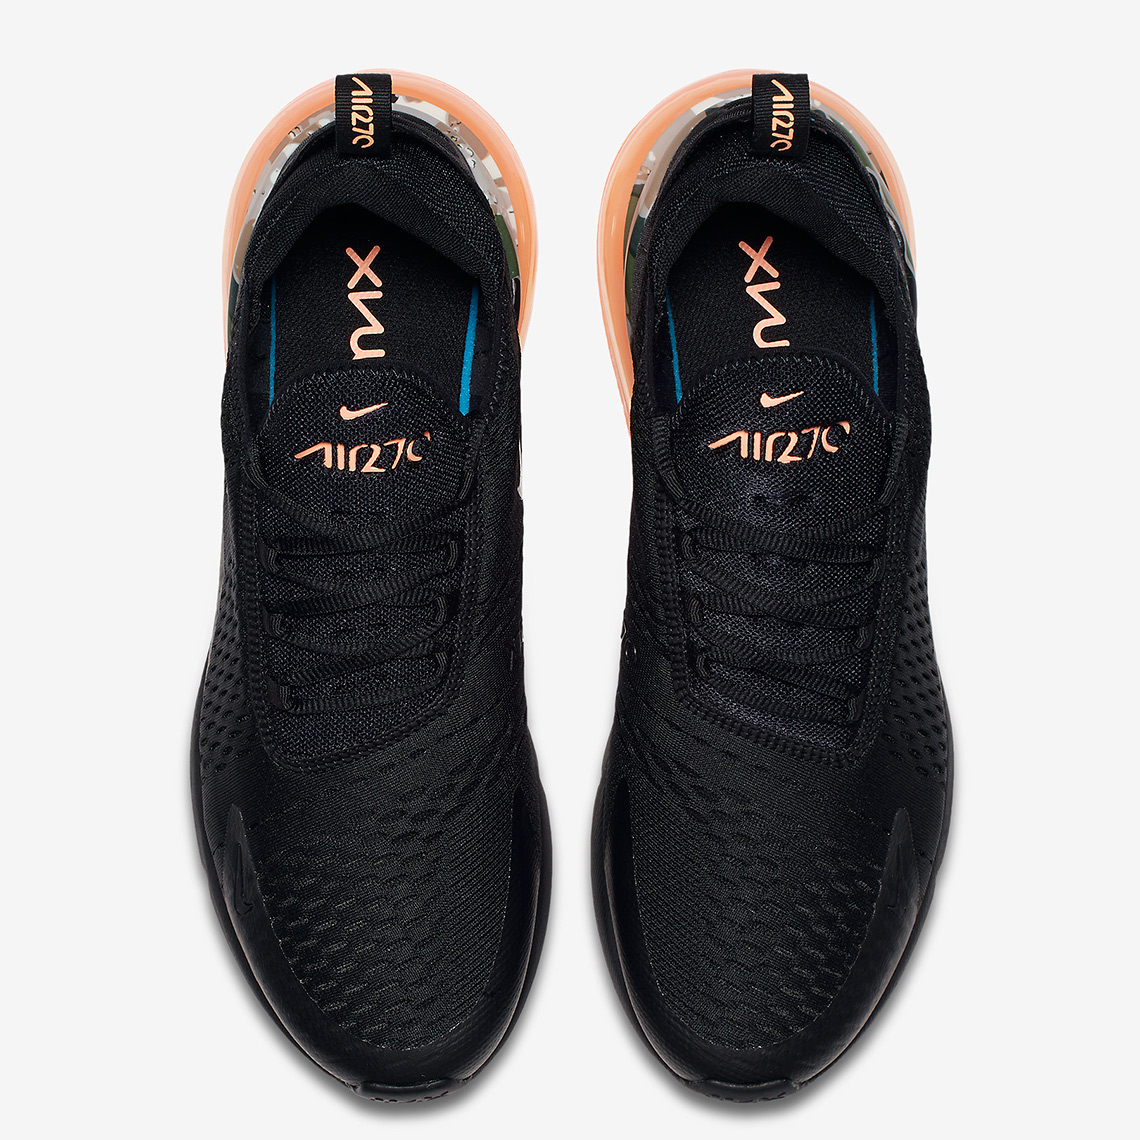 Nike Air Max 270 Camo Print Coming Soon 6